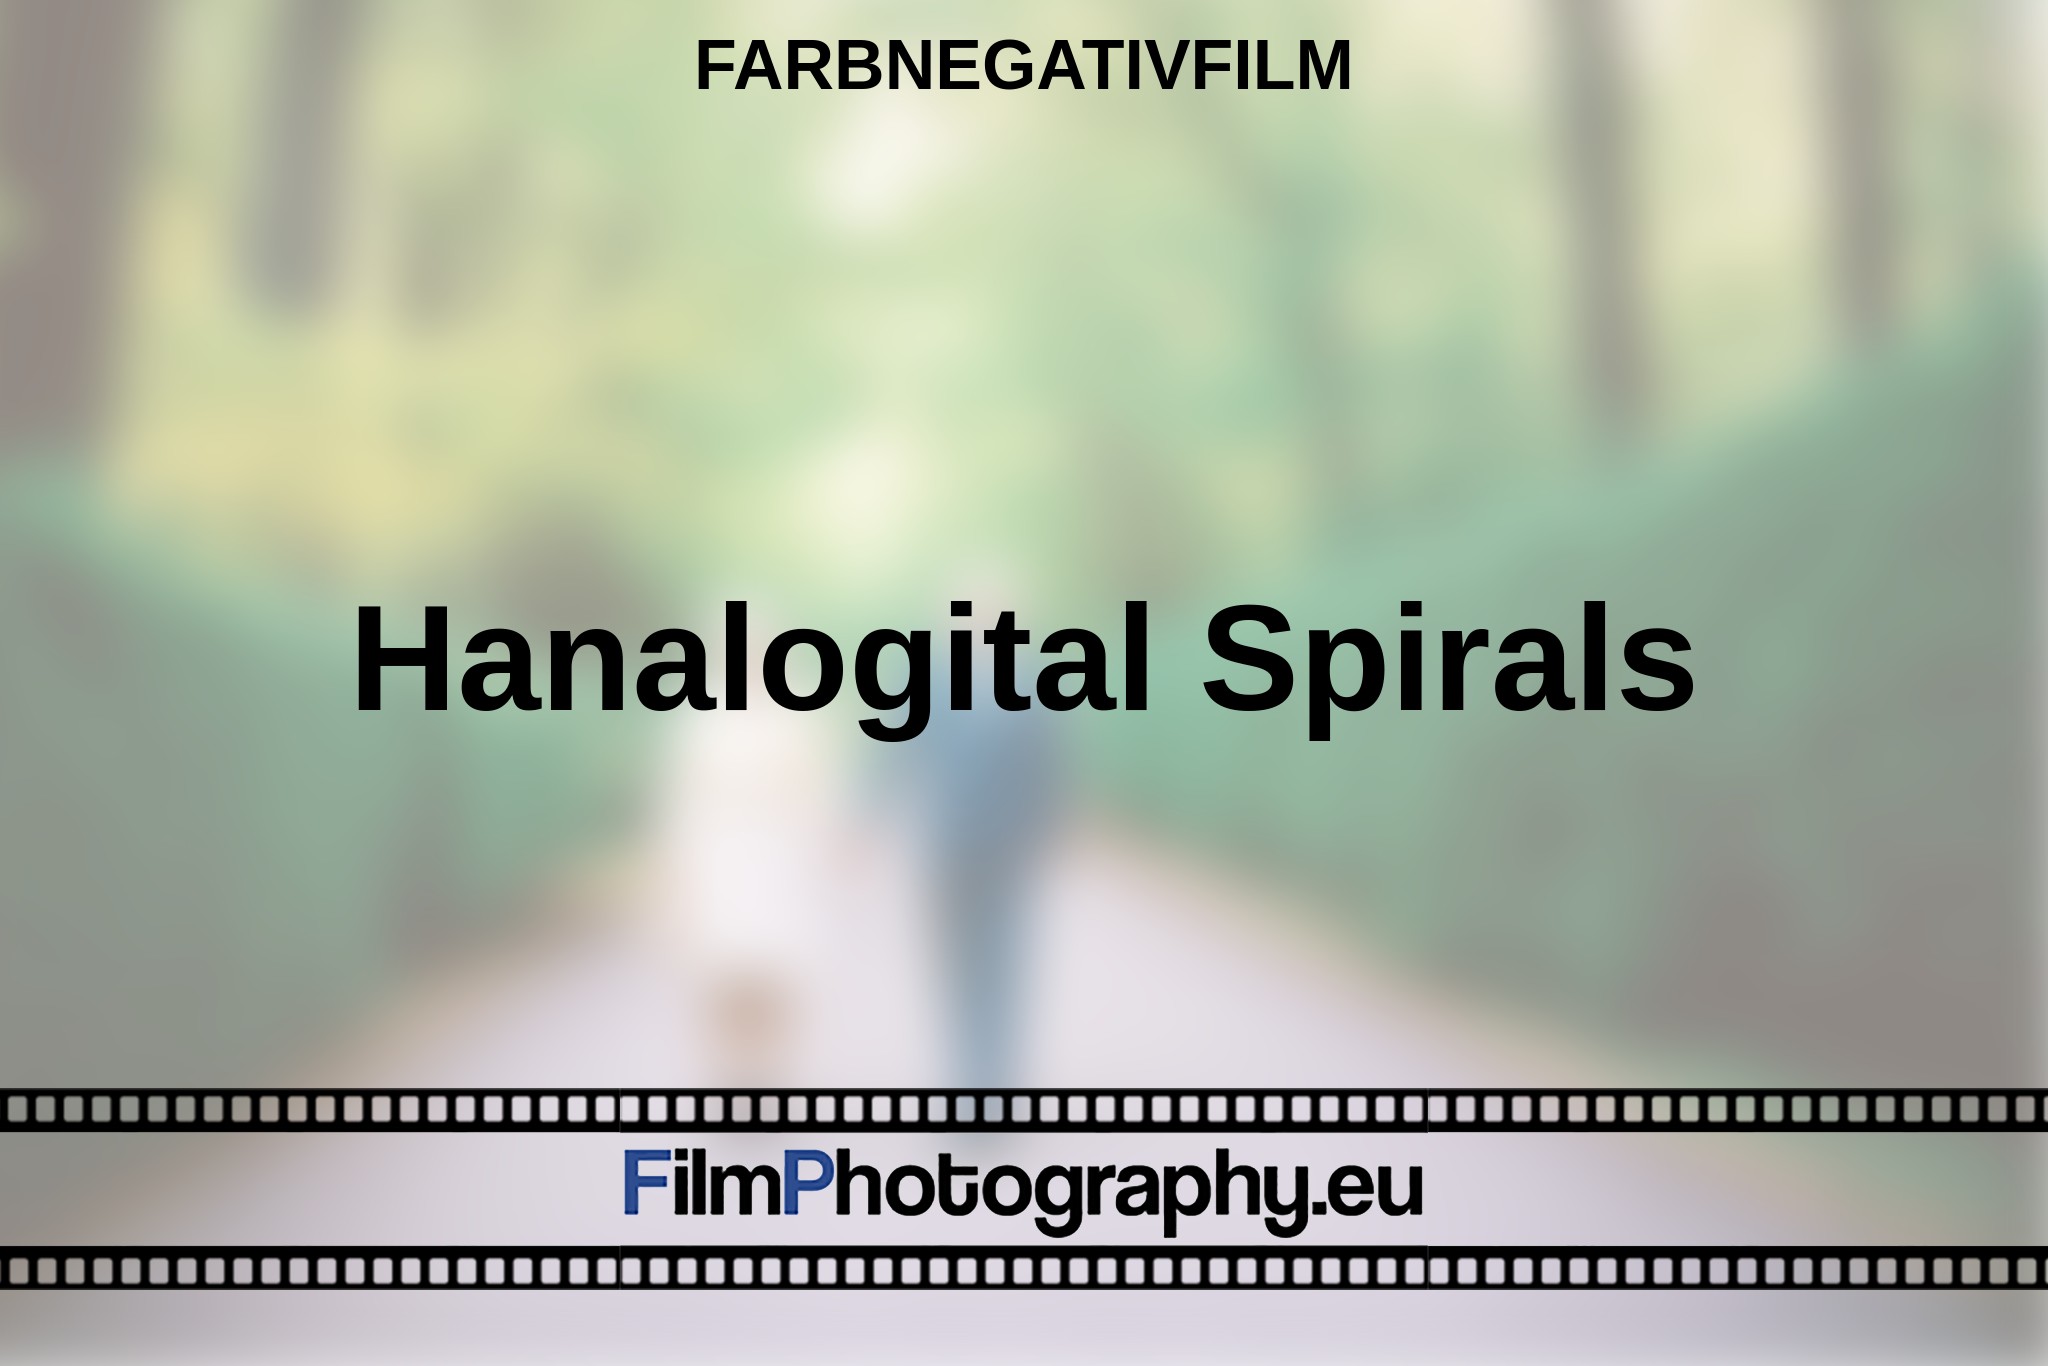 hanalogital-spirals-farbnegativfilm-bnv.jpg